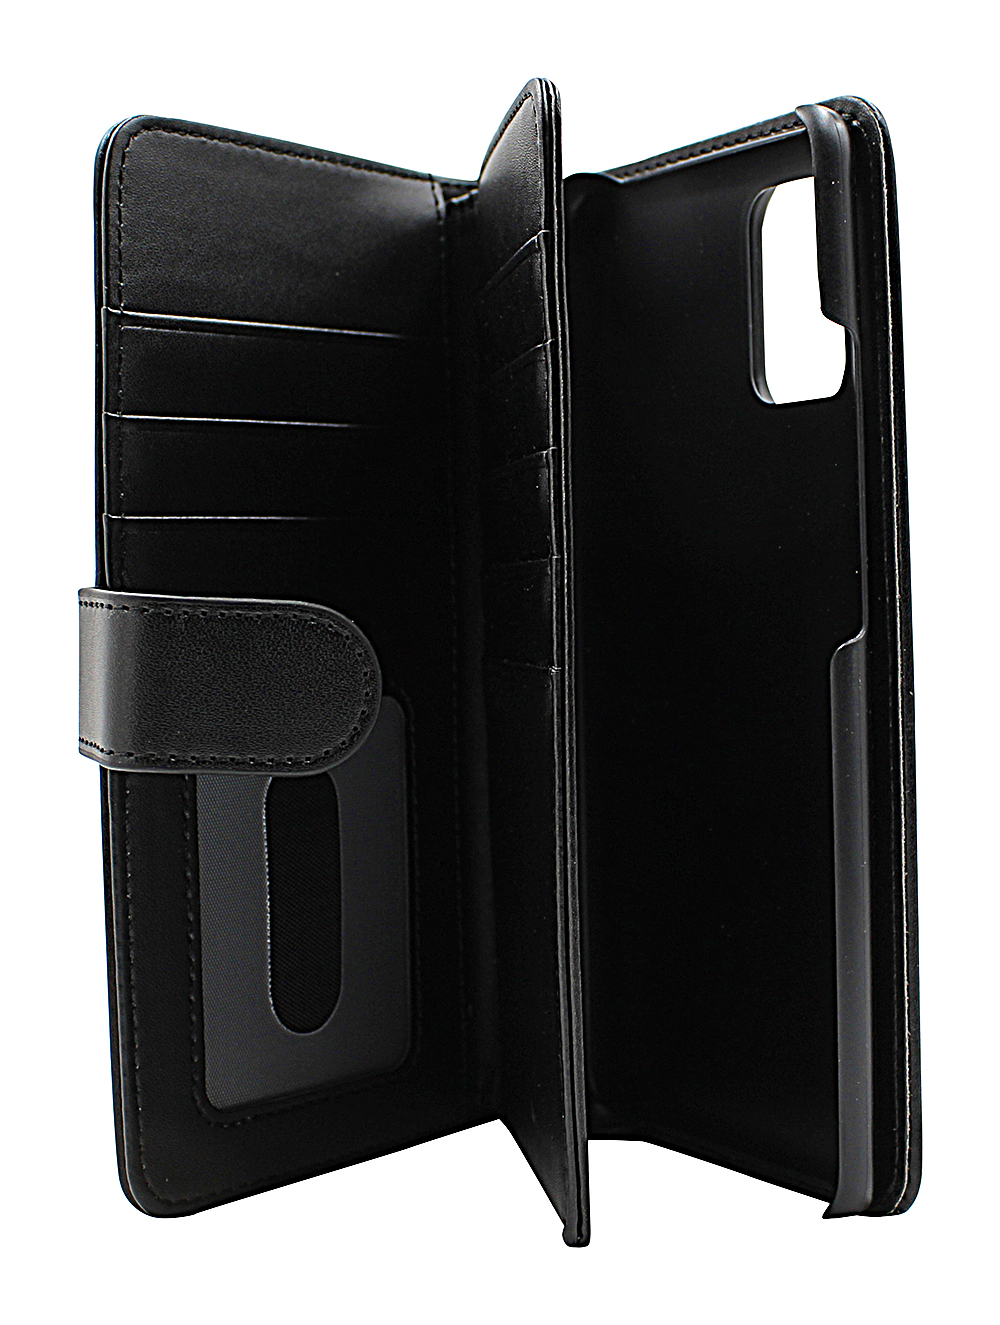 Skimblocker XL Wallet Samsung Galaxy A51 5G (A516B/DS)